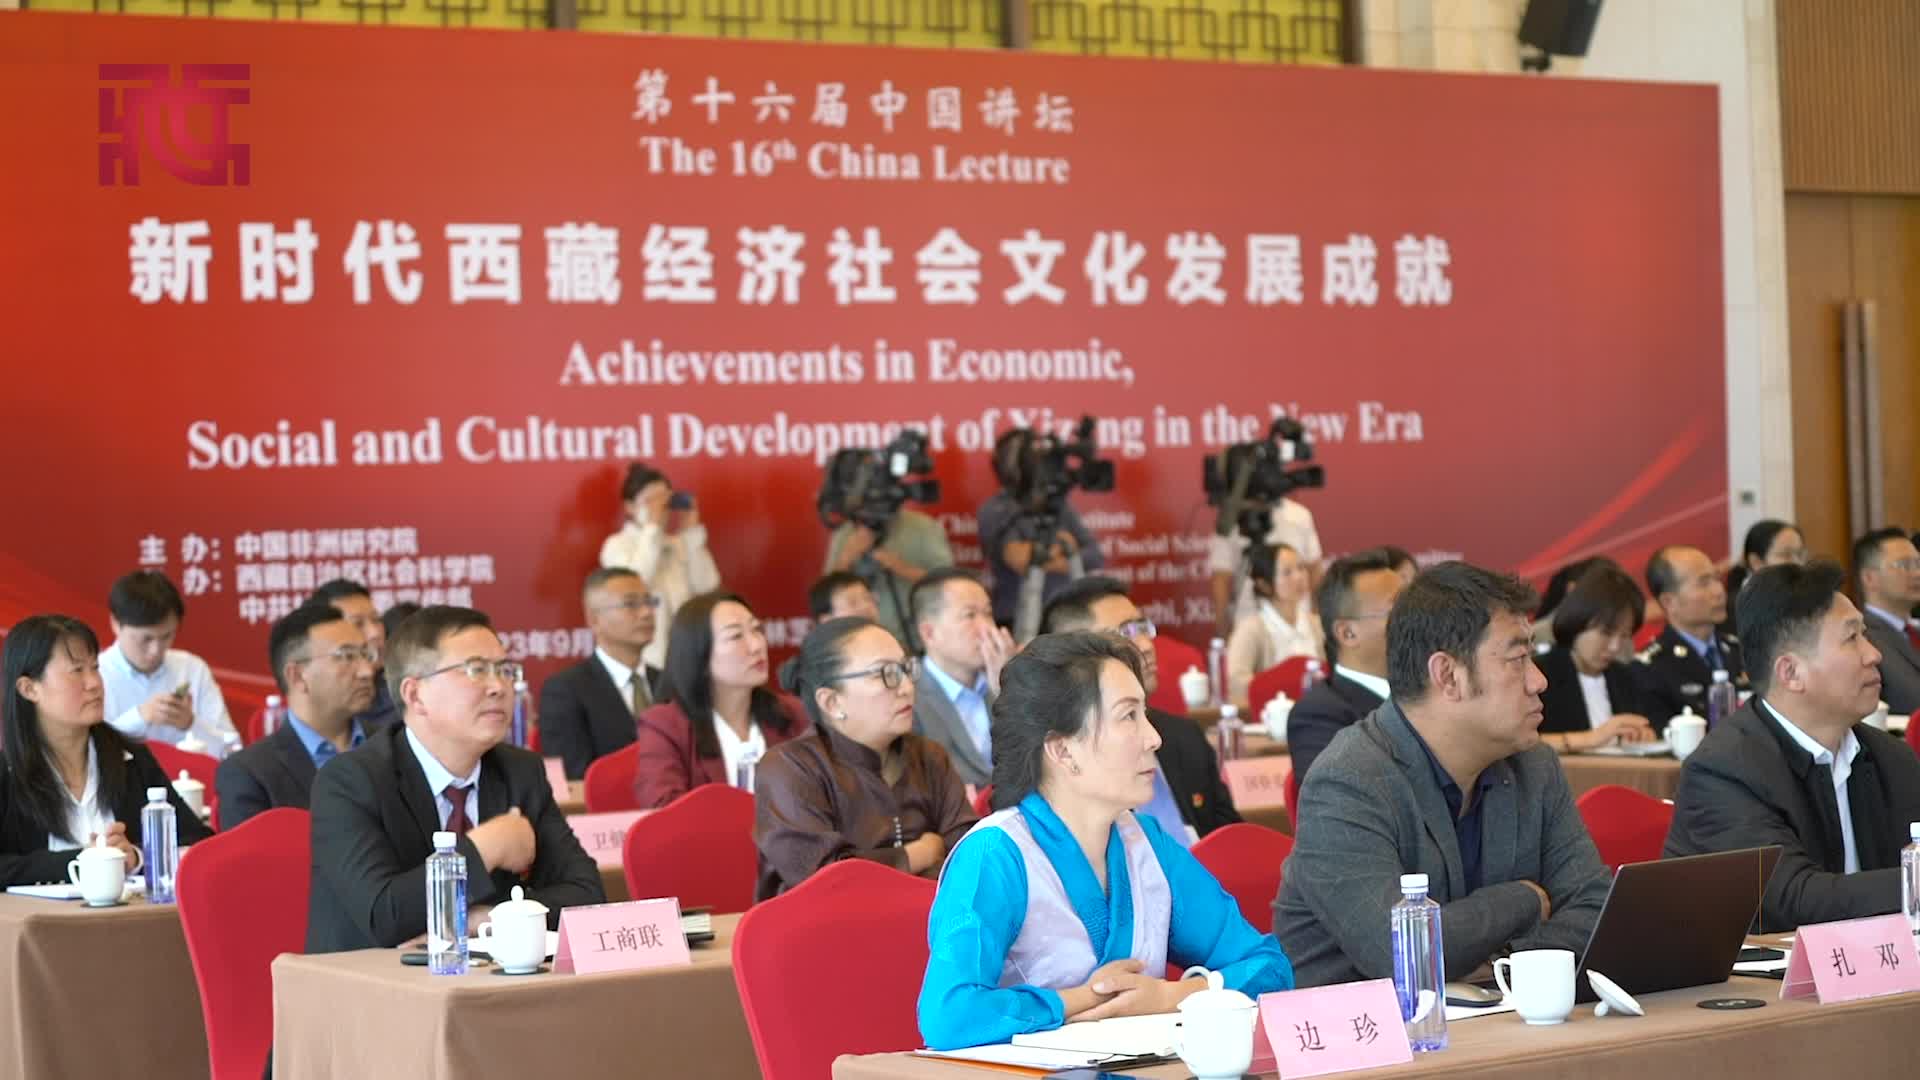 向非洲讲述新时代西藏经济社会发展成就——第十六届“中国讲坛”在西藏林芝举办